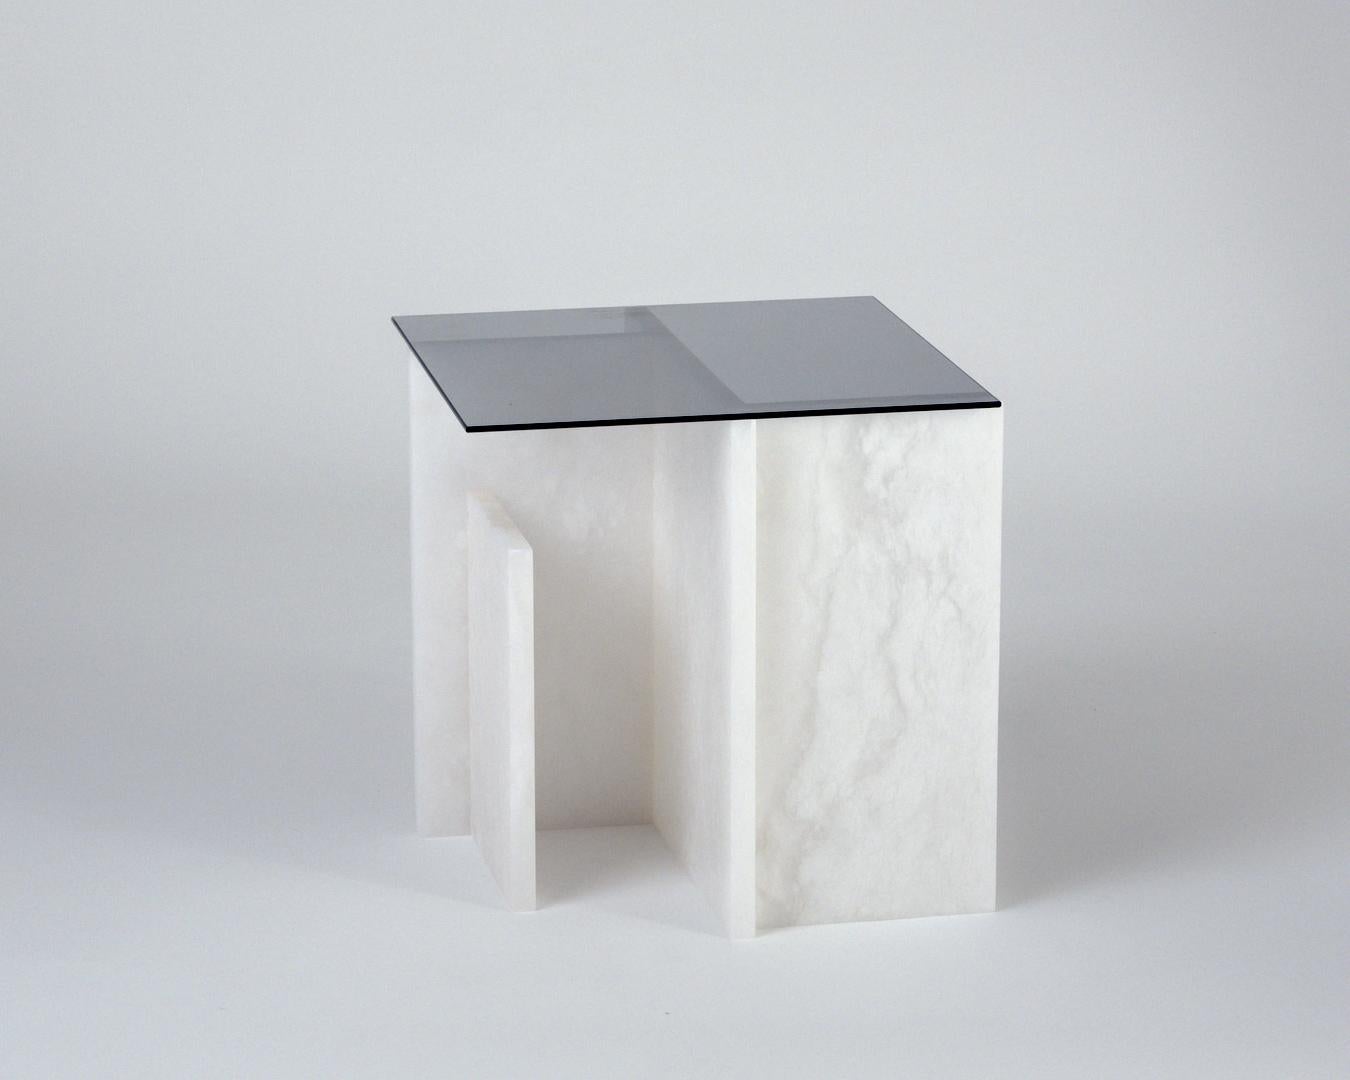 Alabaster Tisch von Owl
Abmessungen: T40 x B40 x H40cm
MATERIALIEN: Massiver Alabaster.

Alabaster ist eine sich entwickelnde Serie, in der Alabaster zu einem funktionalen Spiel von vertikalen, geometrischen Formen geformt wird. Die Serie ist aus